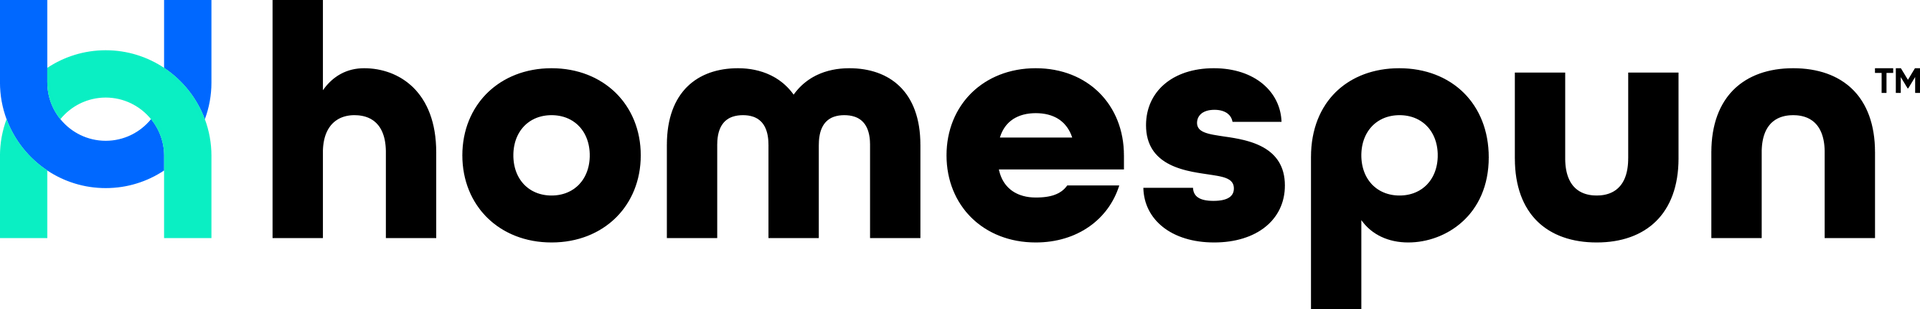 Homespun Digital logo